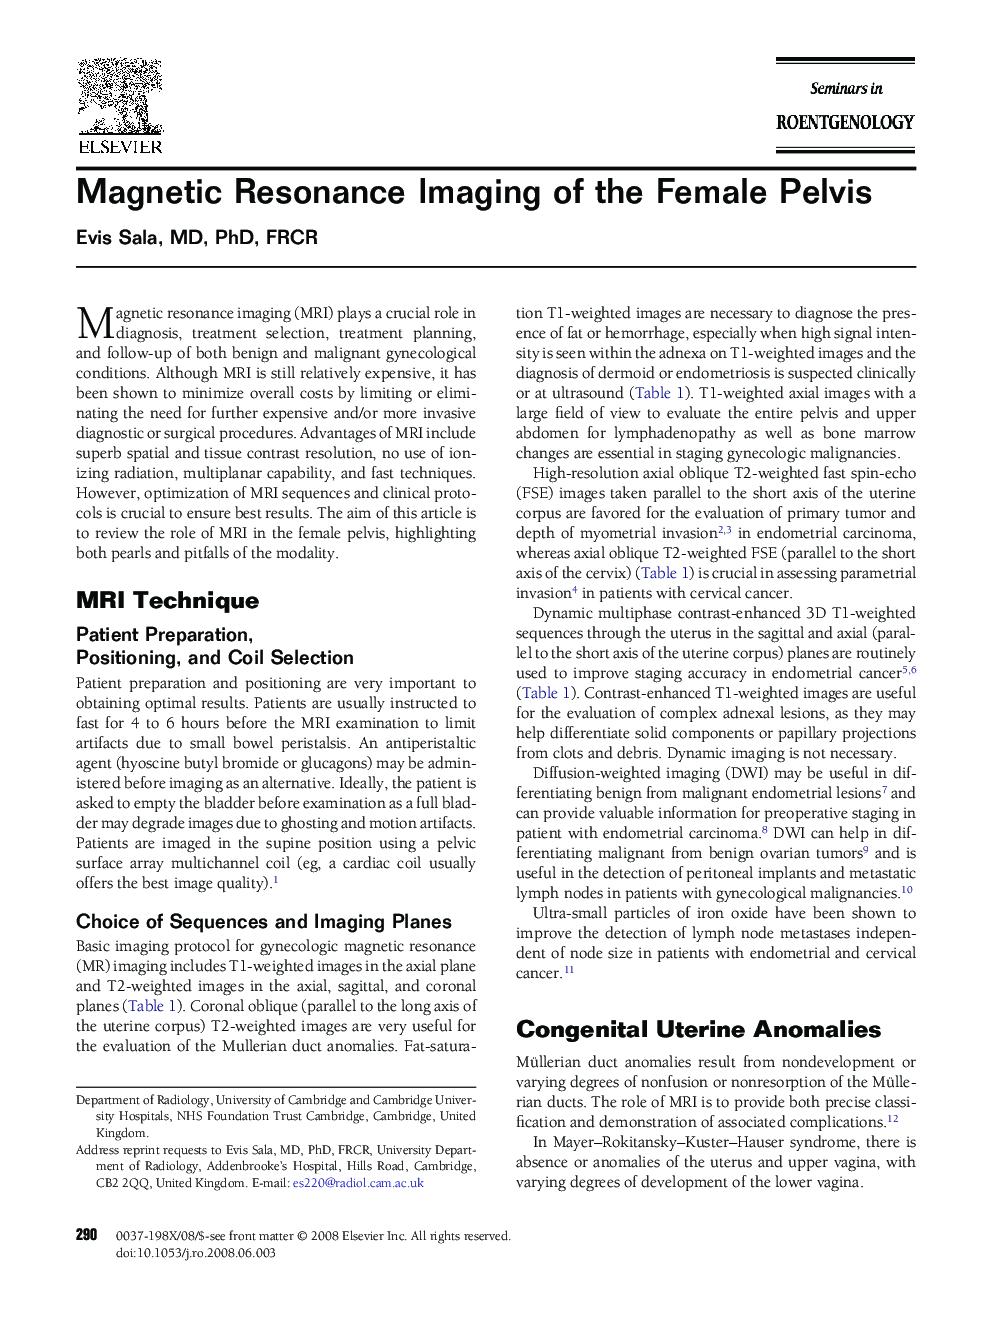 Magnetic Resonance Imaging of the Female Pelvis